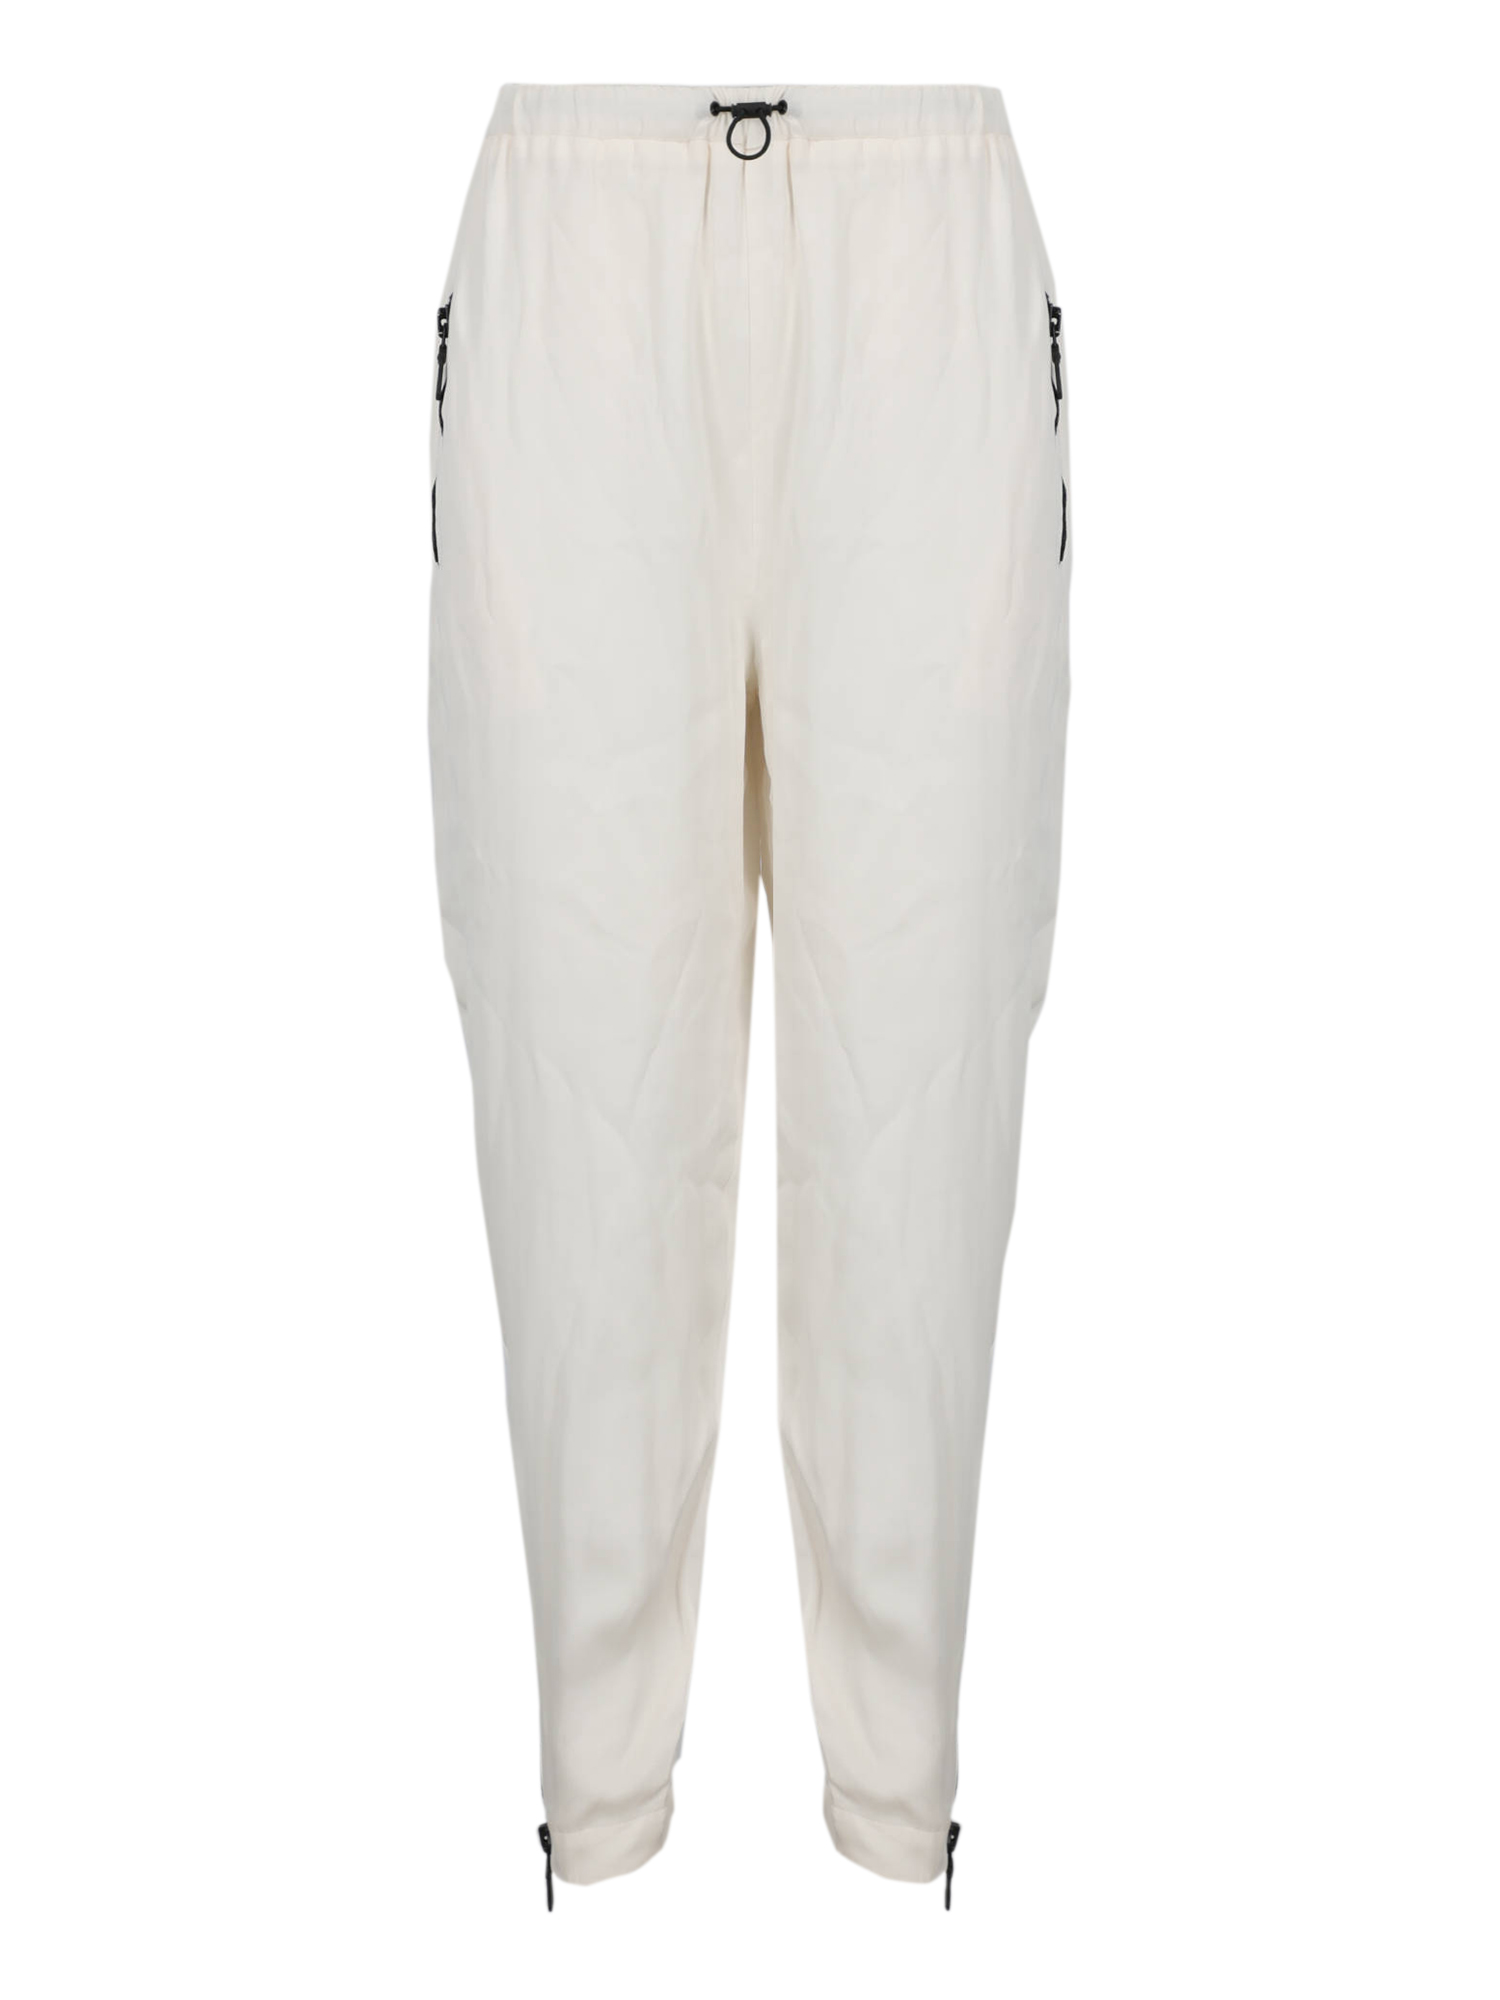 Pantalons Pour Femme - Emilio Pucci - En Silk White - Taille:  -